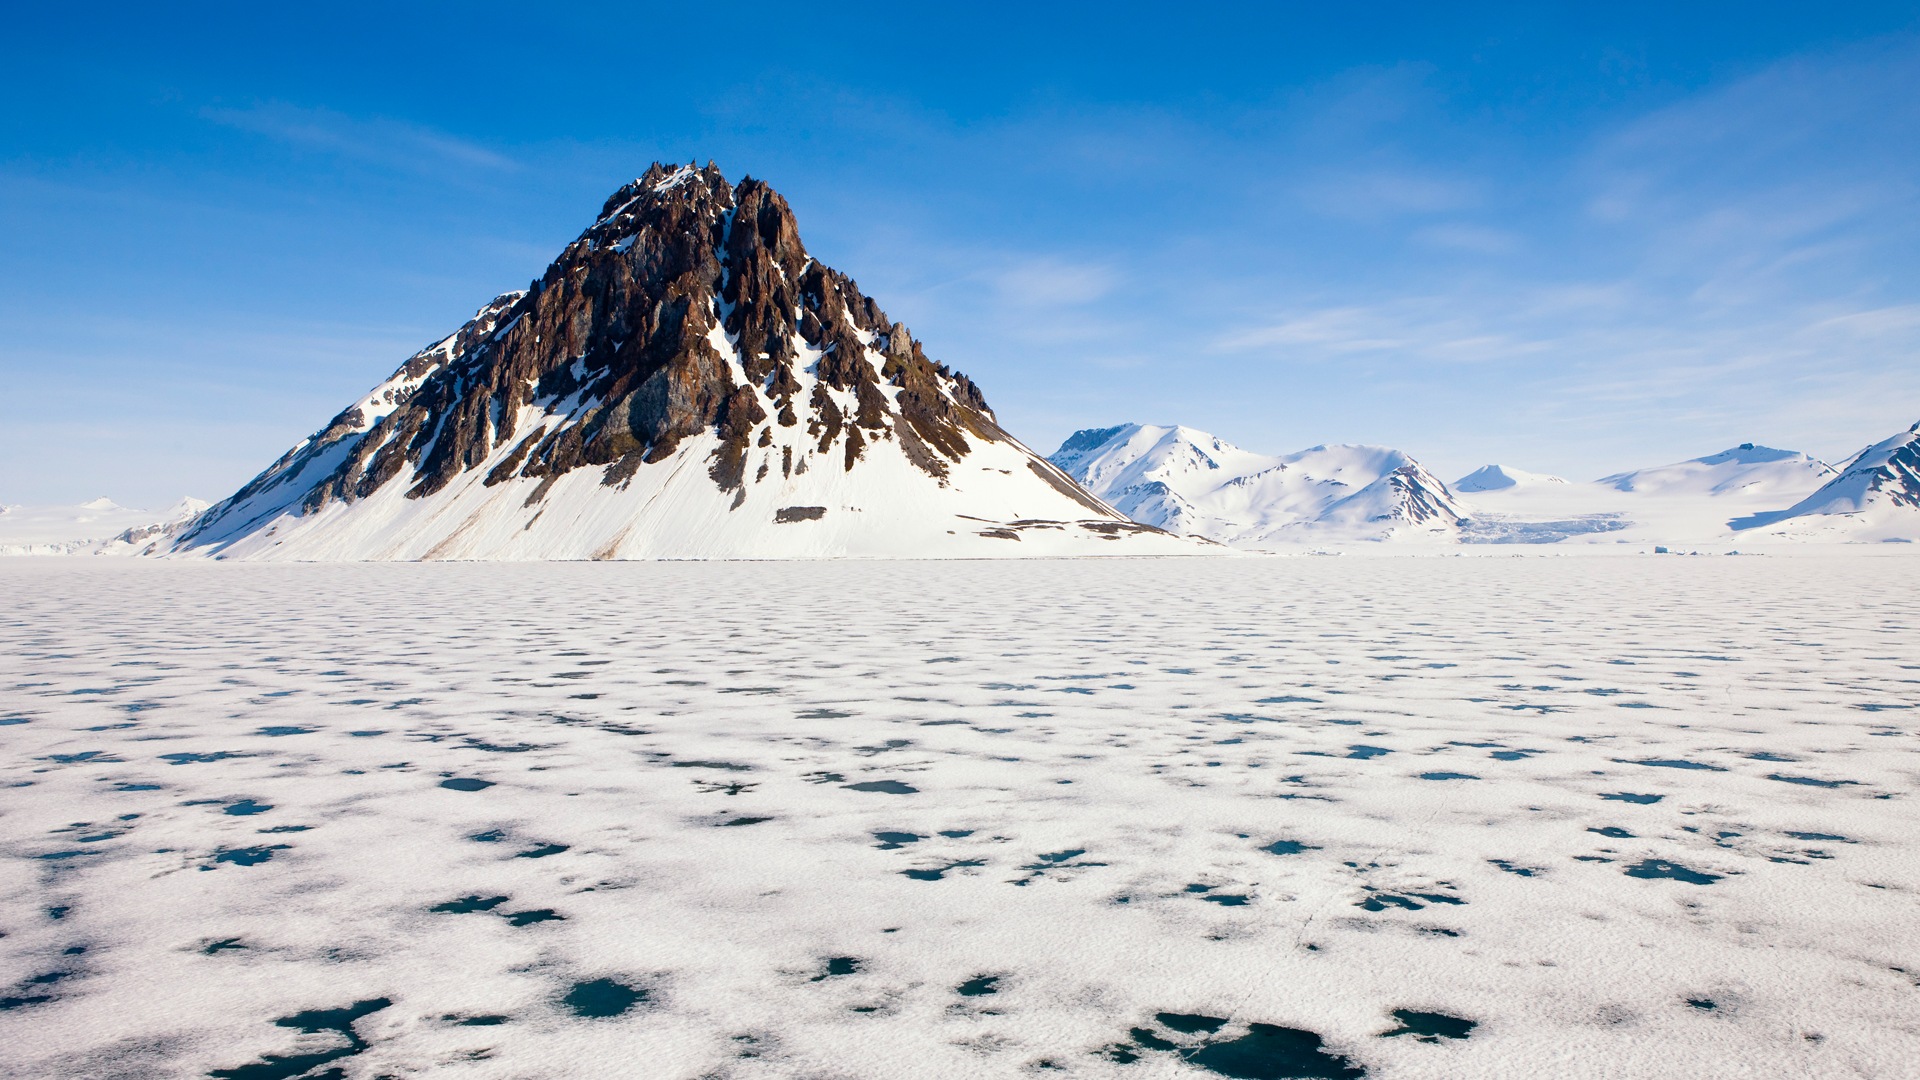 Windows 8: Fondos del Ártico, el paisaje ecológico, ártico animales #1 - 1920x1080